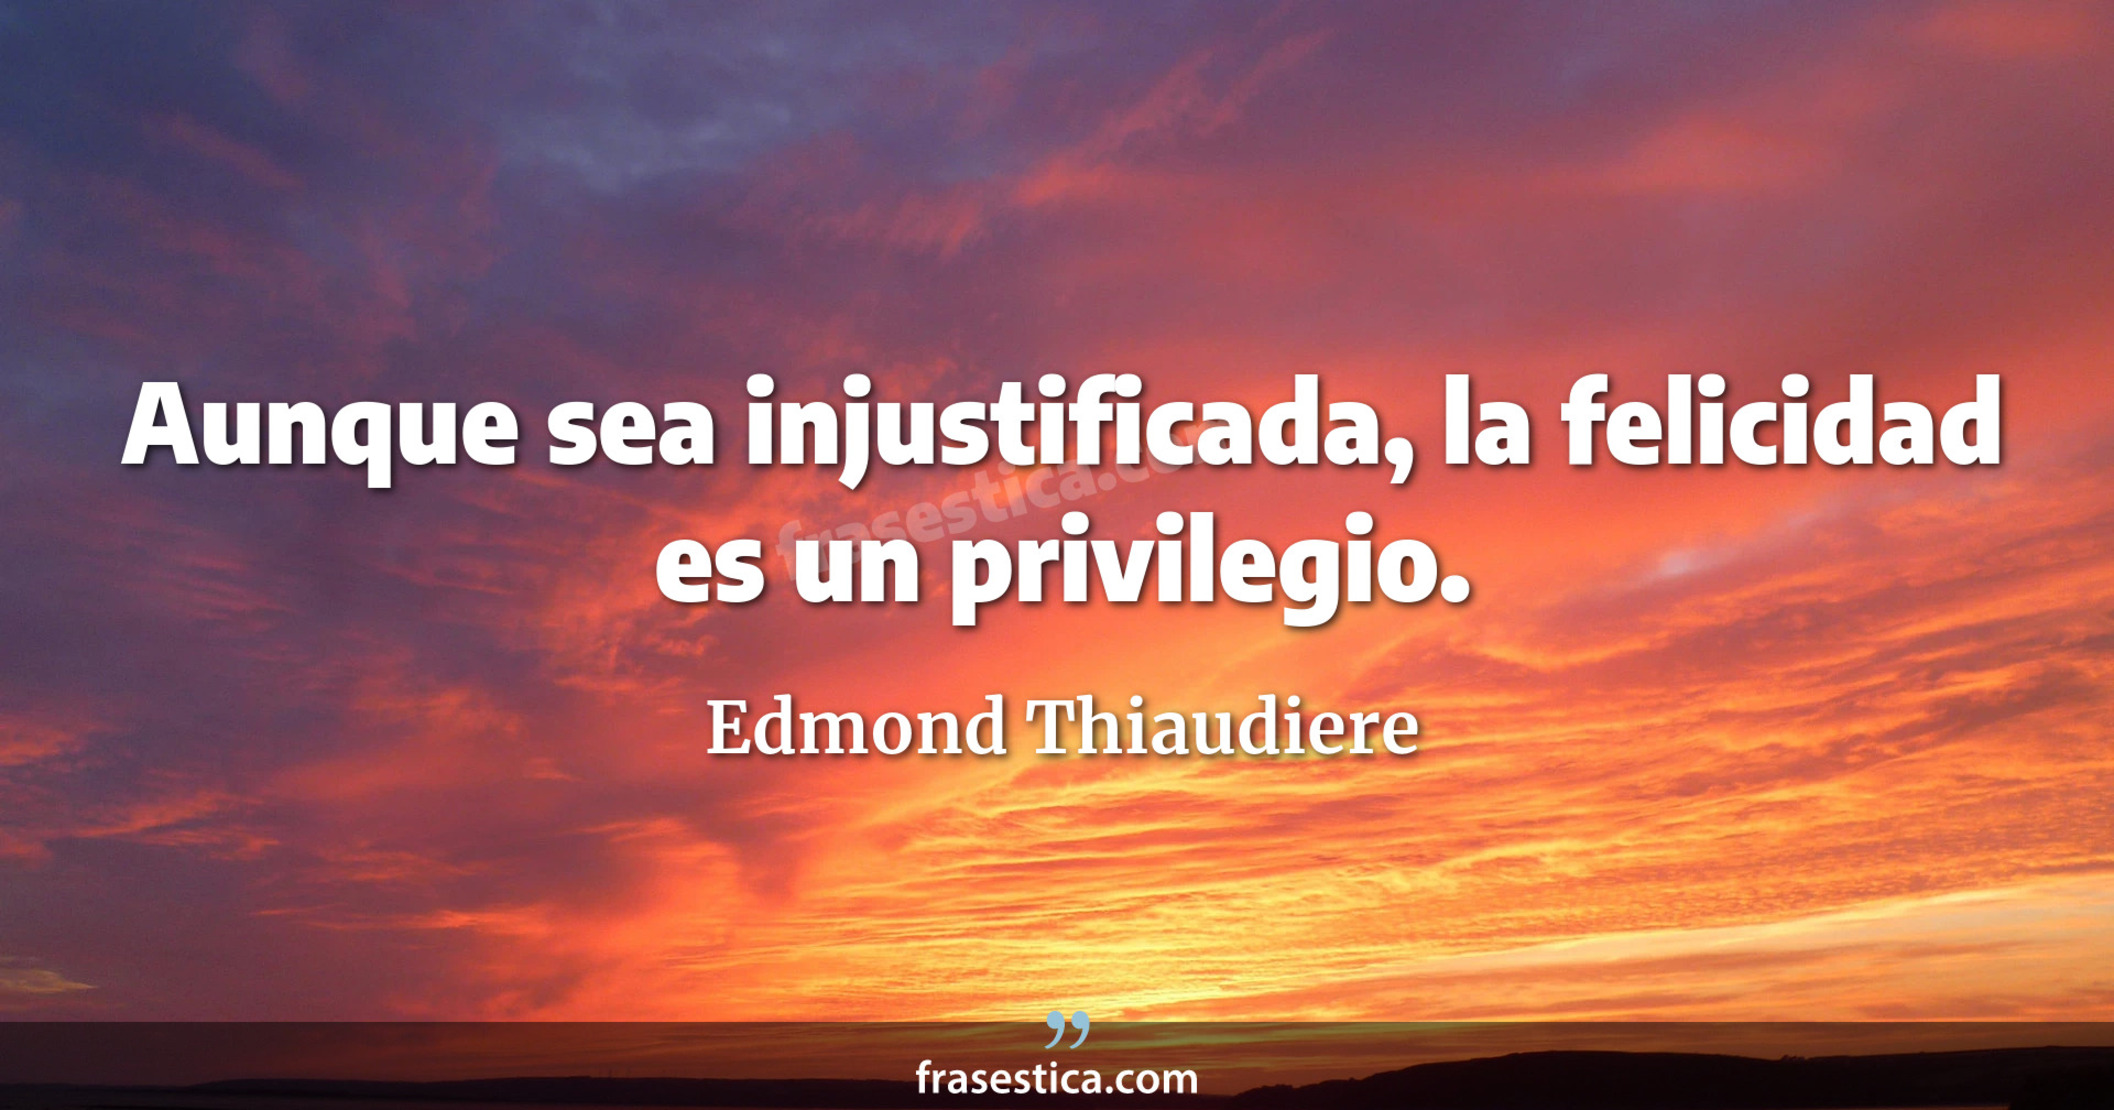 Aunque sea injustificada, la felicidad es un privilegio. - Edmond Thiaudiere